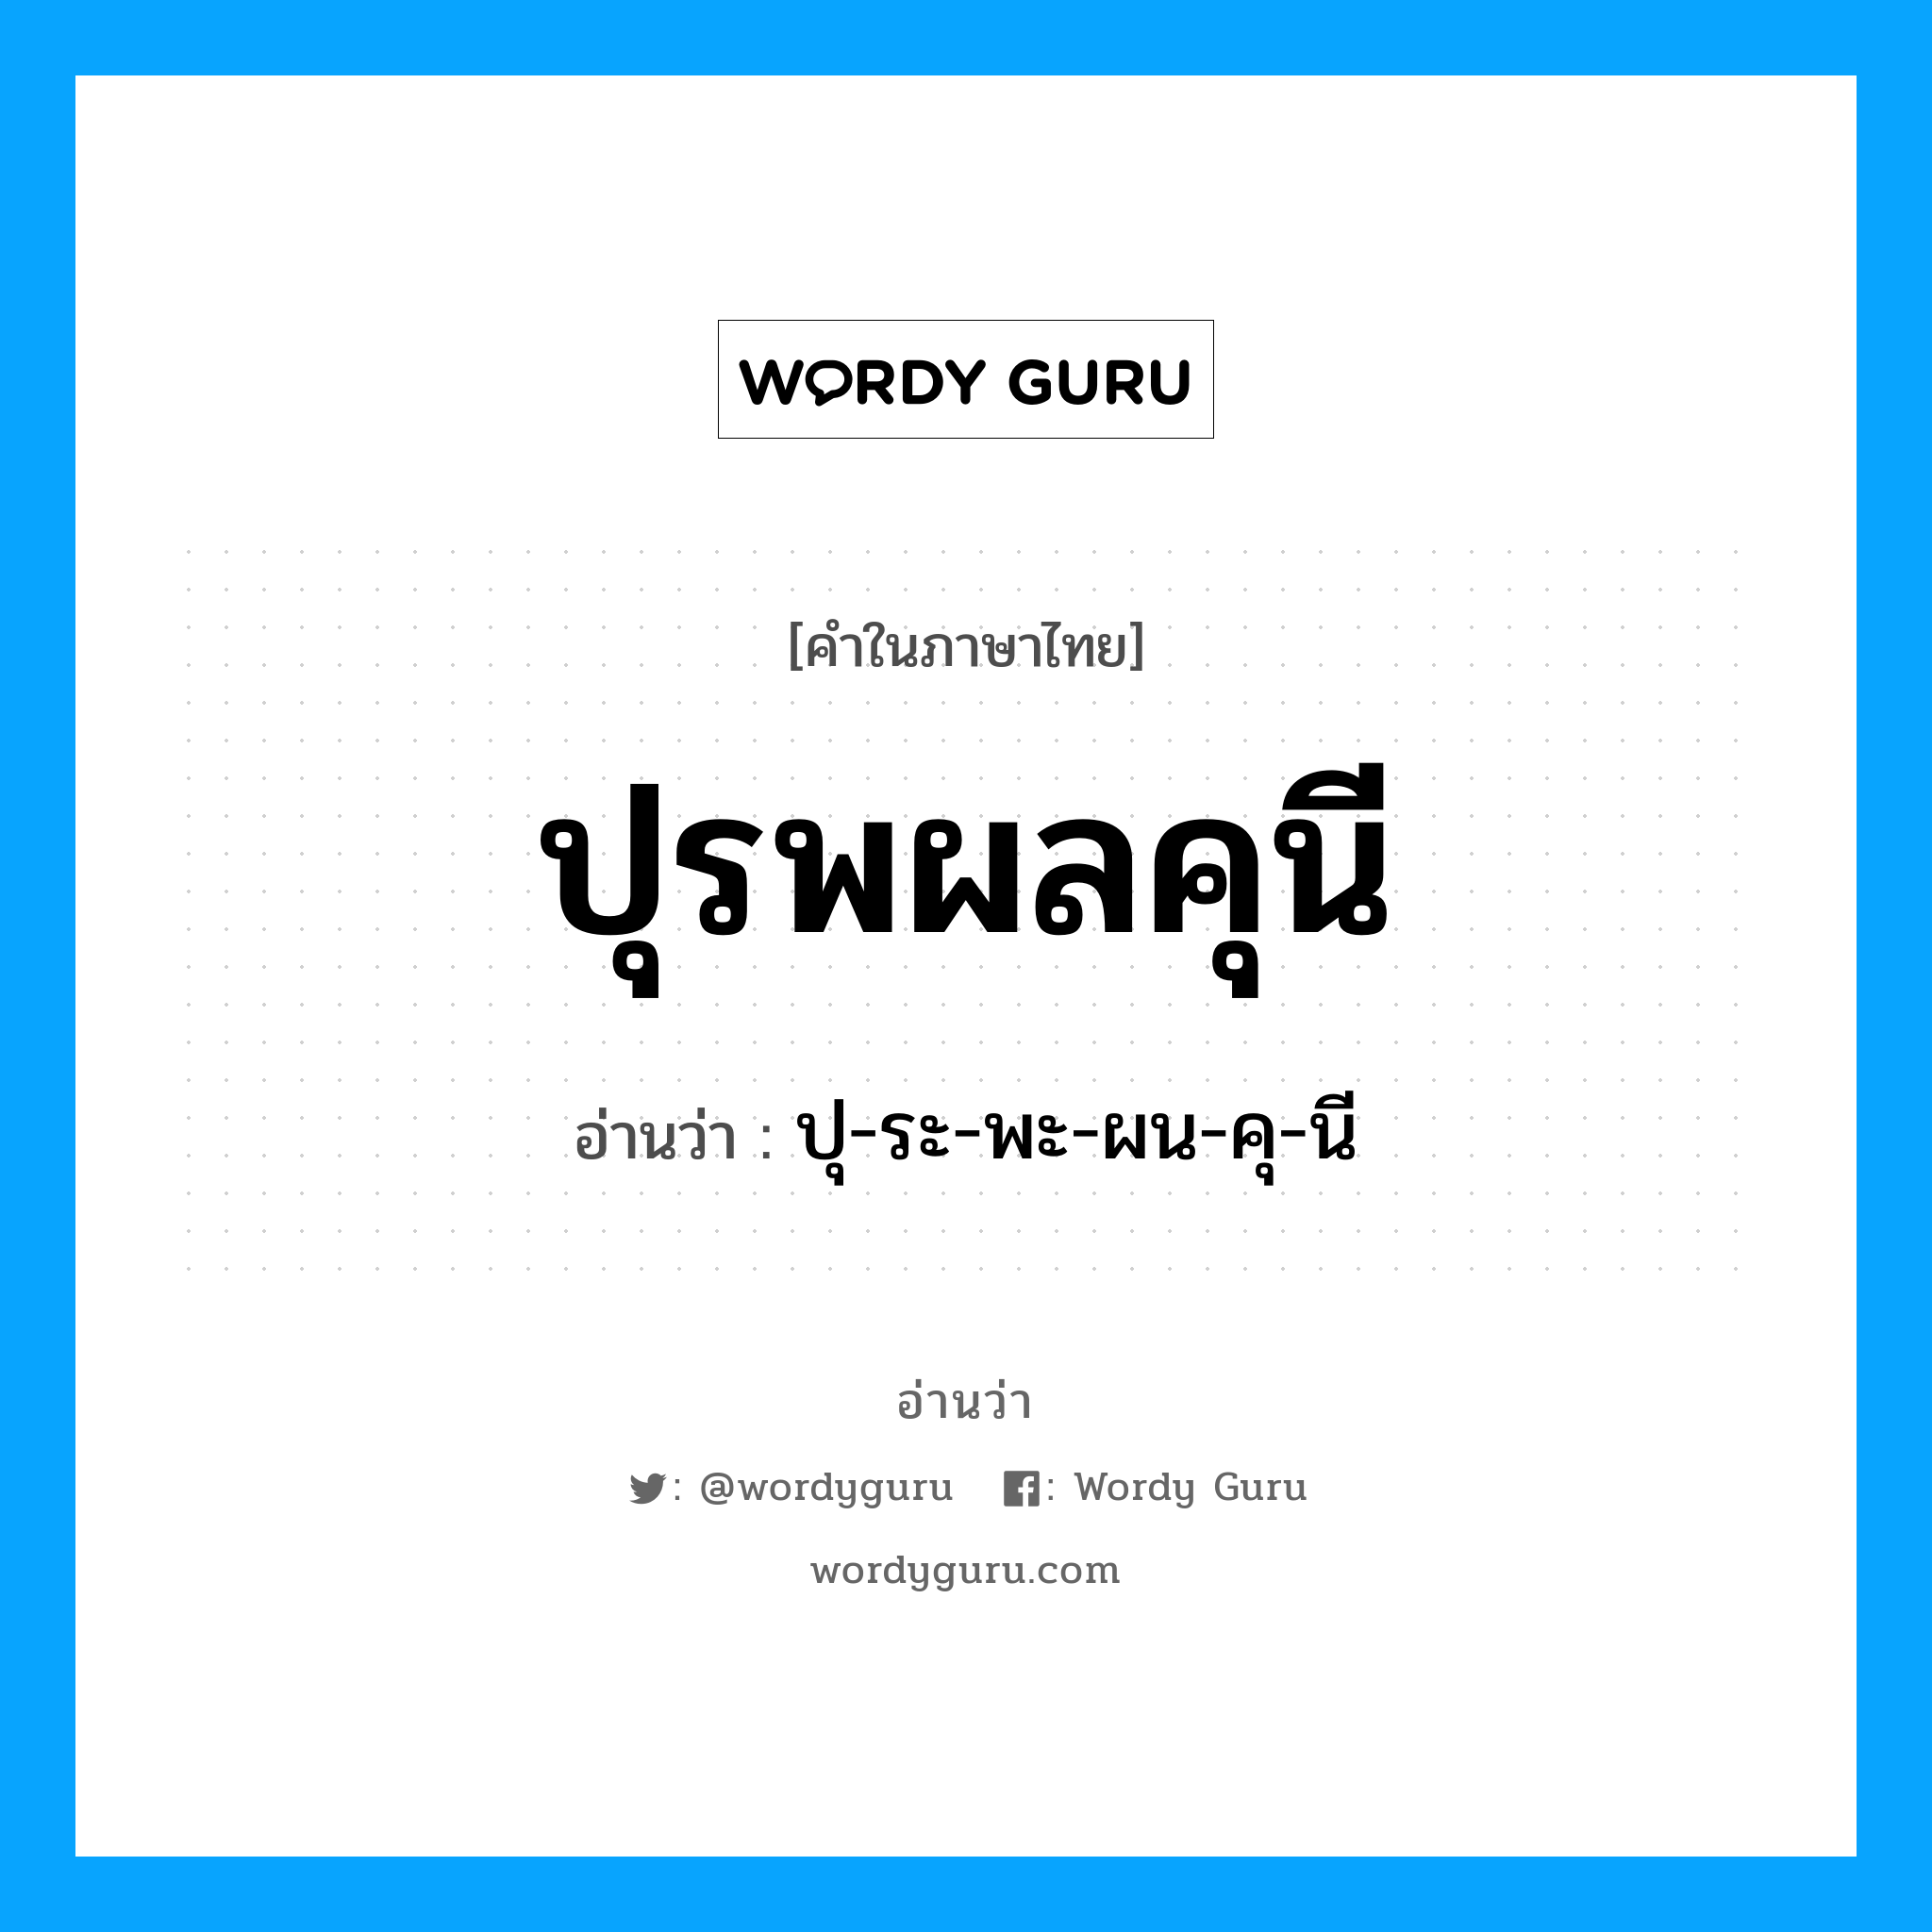 ปุ-ระ-พะ-ผน-คุ-นี เป็นคำอ่านของคำไหน?, คำในภาษาไทย ปุ-ระ-พะ-ผน-คุ-นี อ่านว่า ปุรพผลคุนี